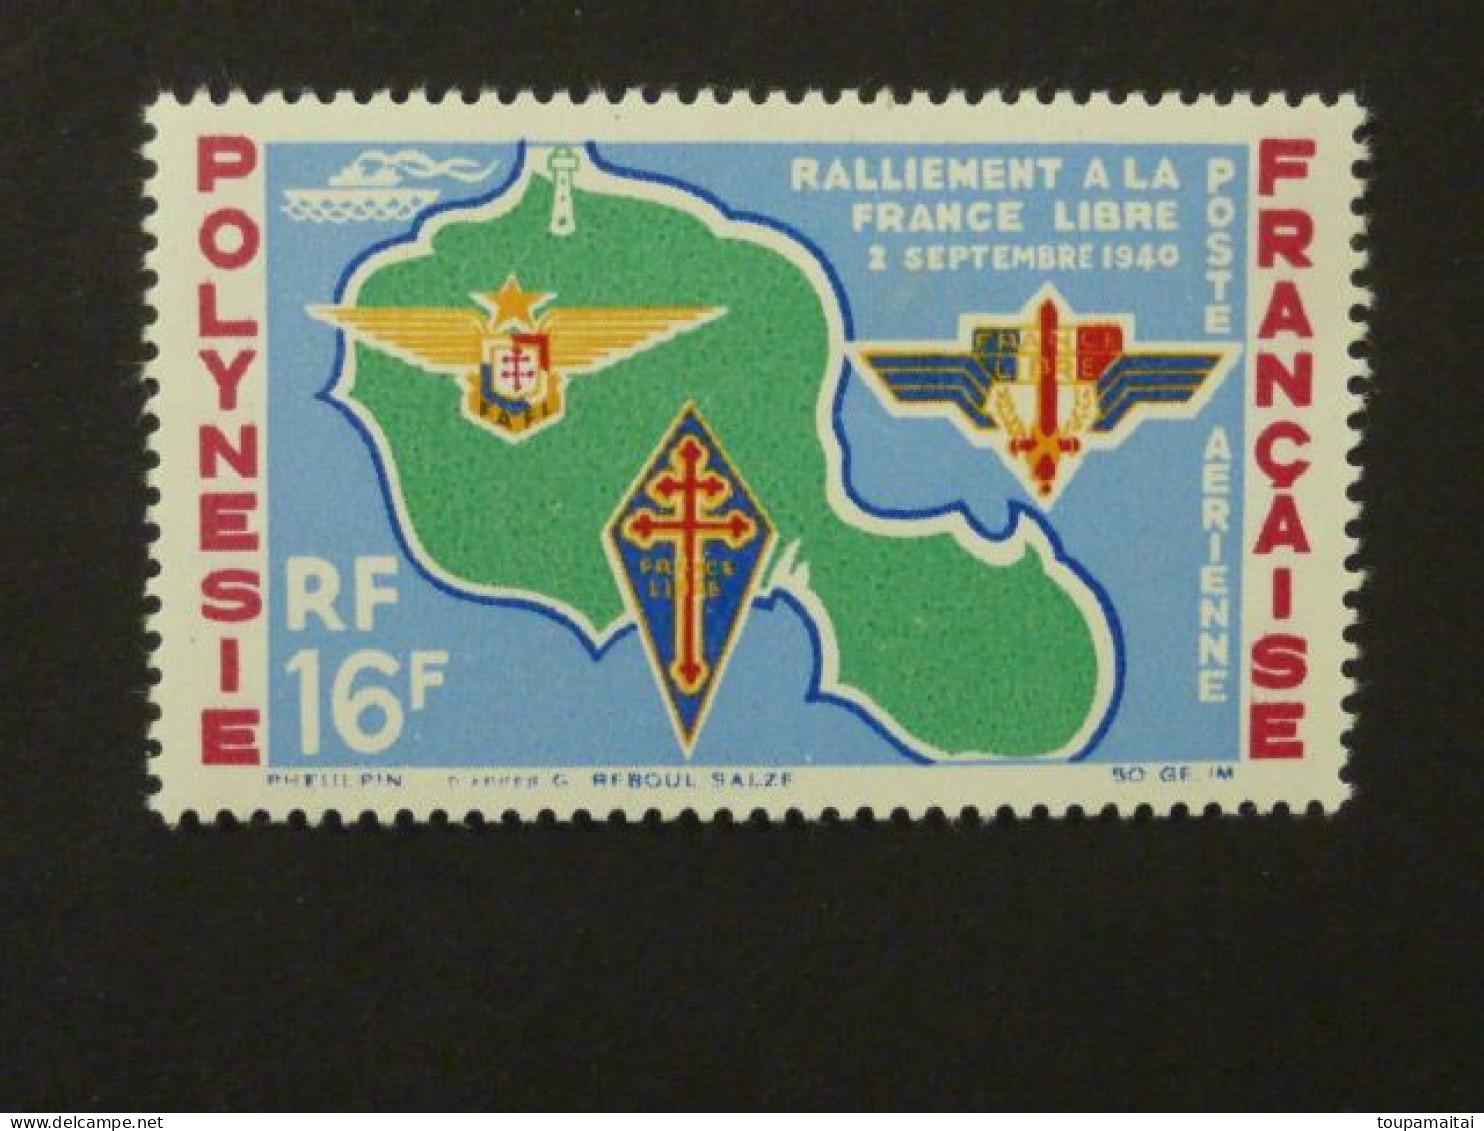 POLYNESIE FRANCAISE, Poste Aérienne, Année 1964, YT N° 8 Neuf MH, Ralliement à La France Libre Le 2 Septembre 1940 - Unused Stamps